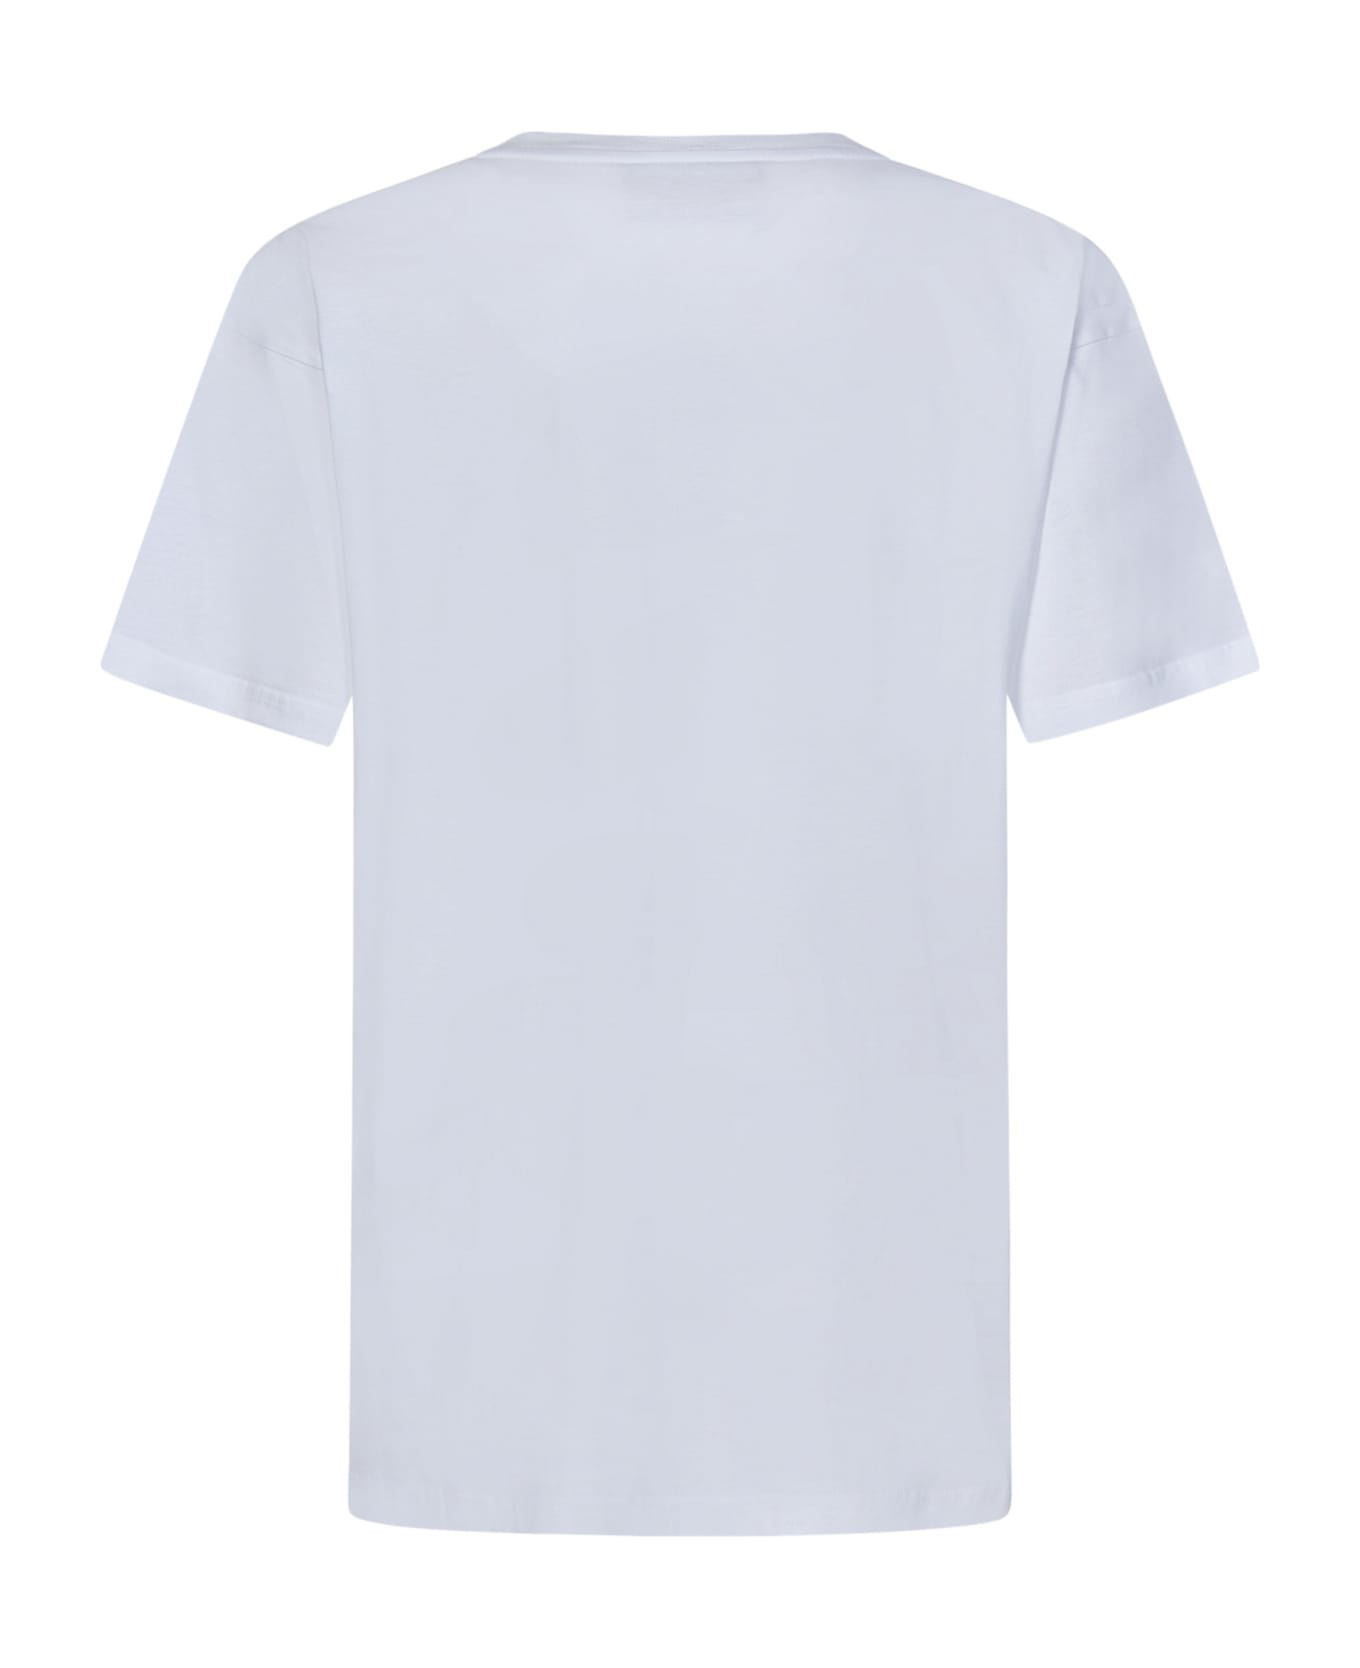 Moschino T-shirt - White Tシャツ